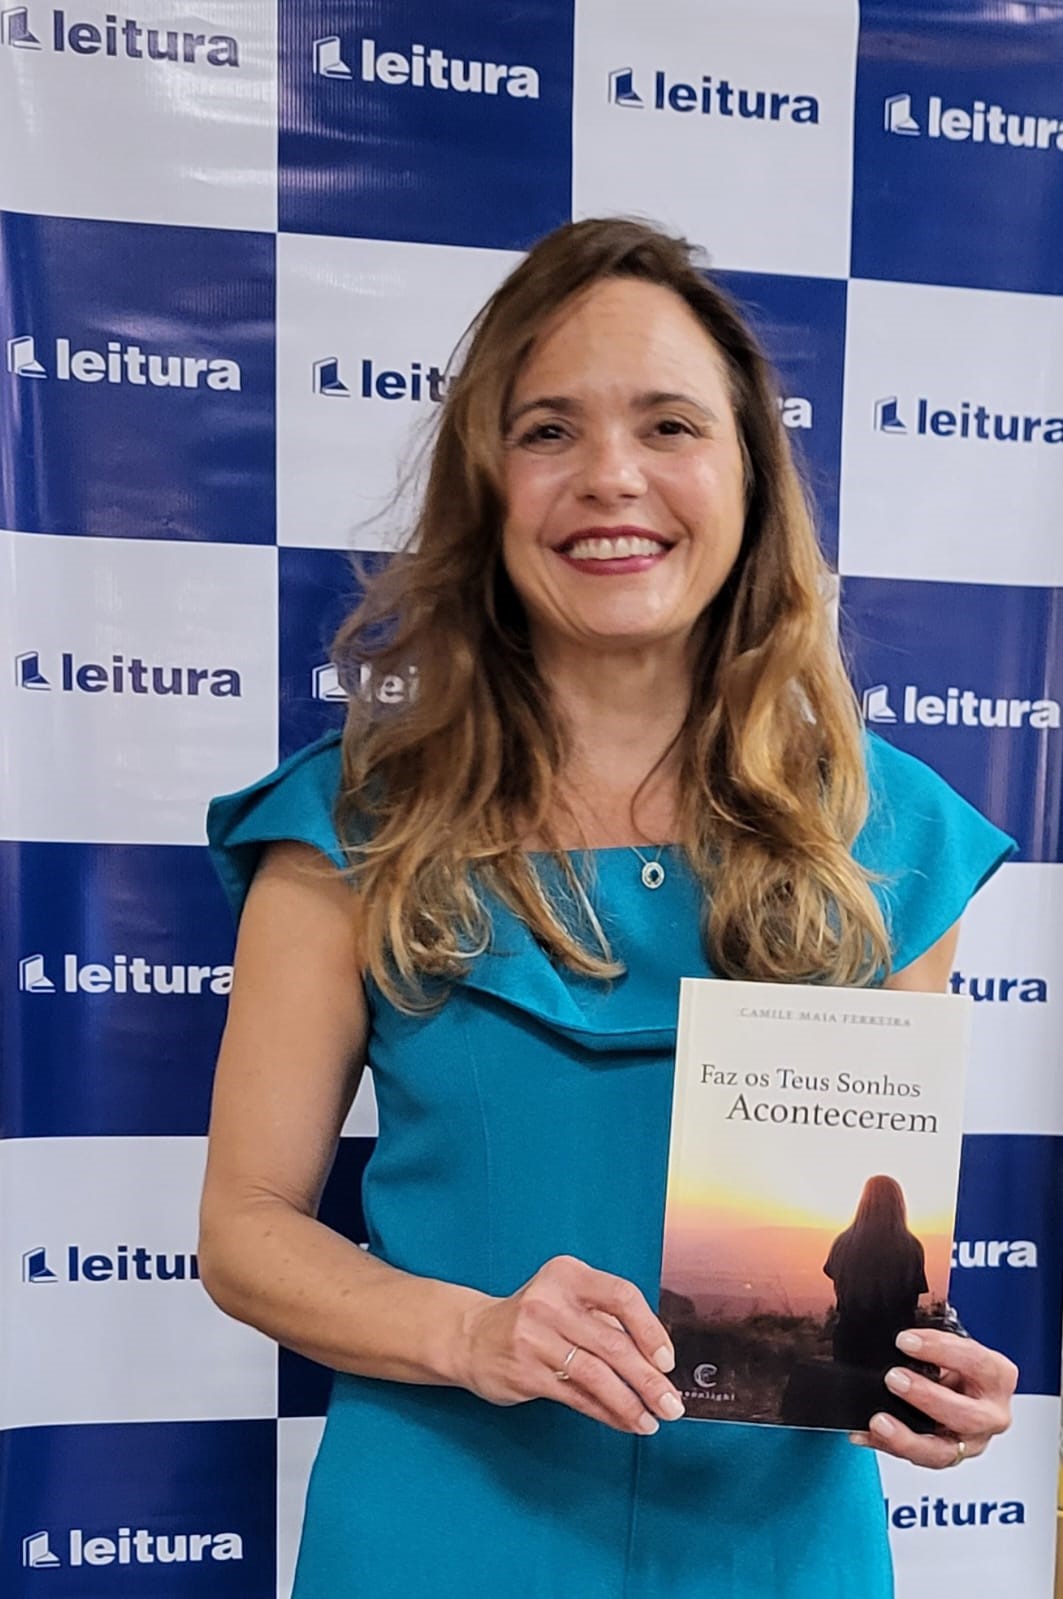 Livro "Faz os Teus Sonhos Acontecerem" de Camile Maia Ferreira.